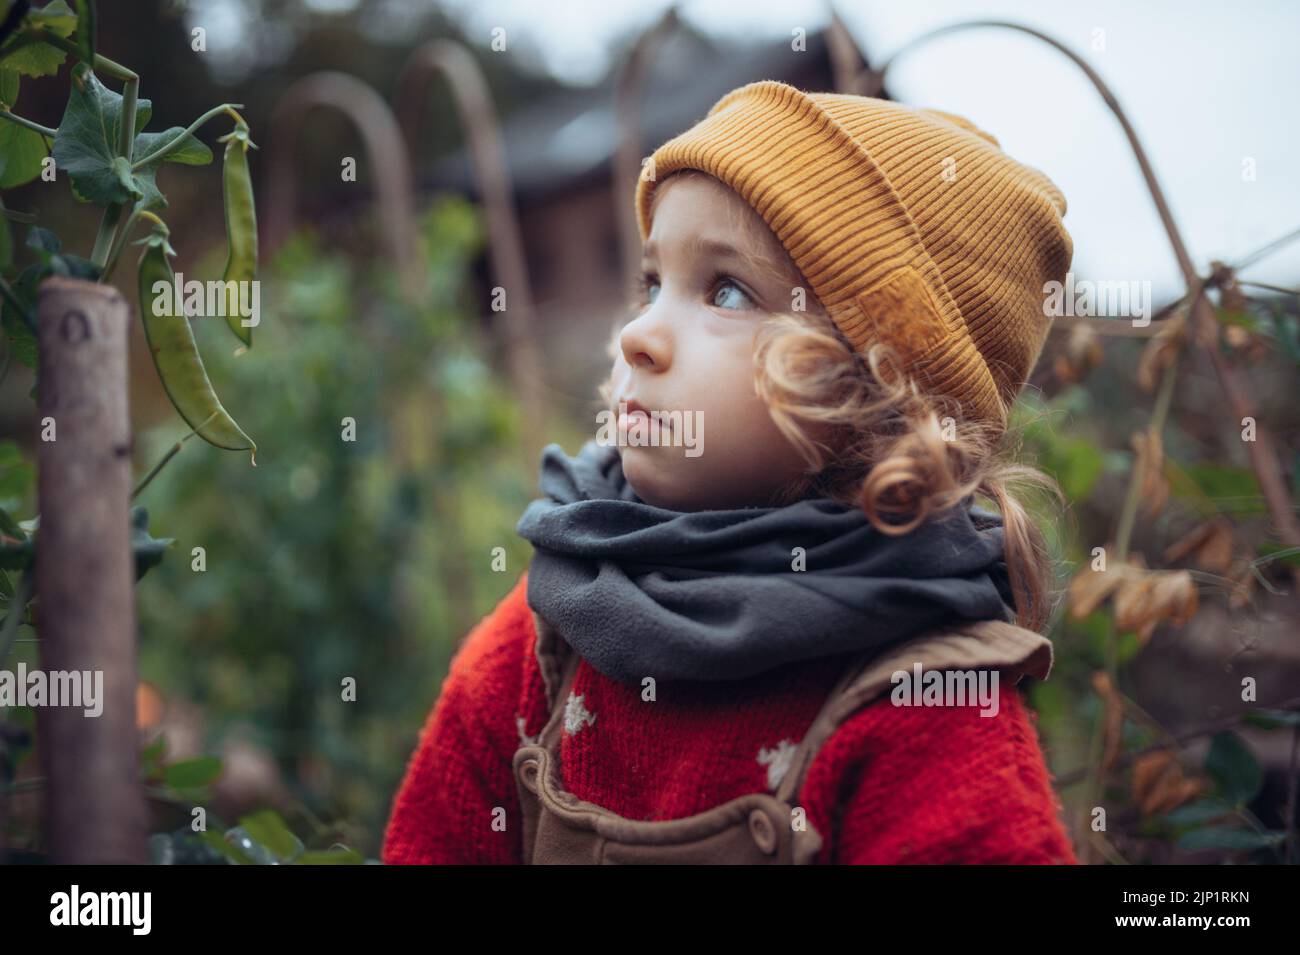 Retrato de una niña rubia en el jardín otoñal con ropa cálida. Foto de stock